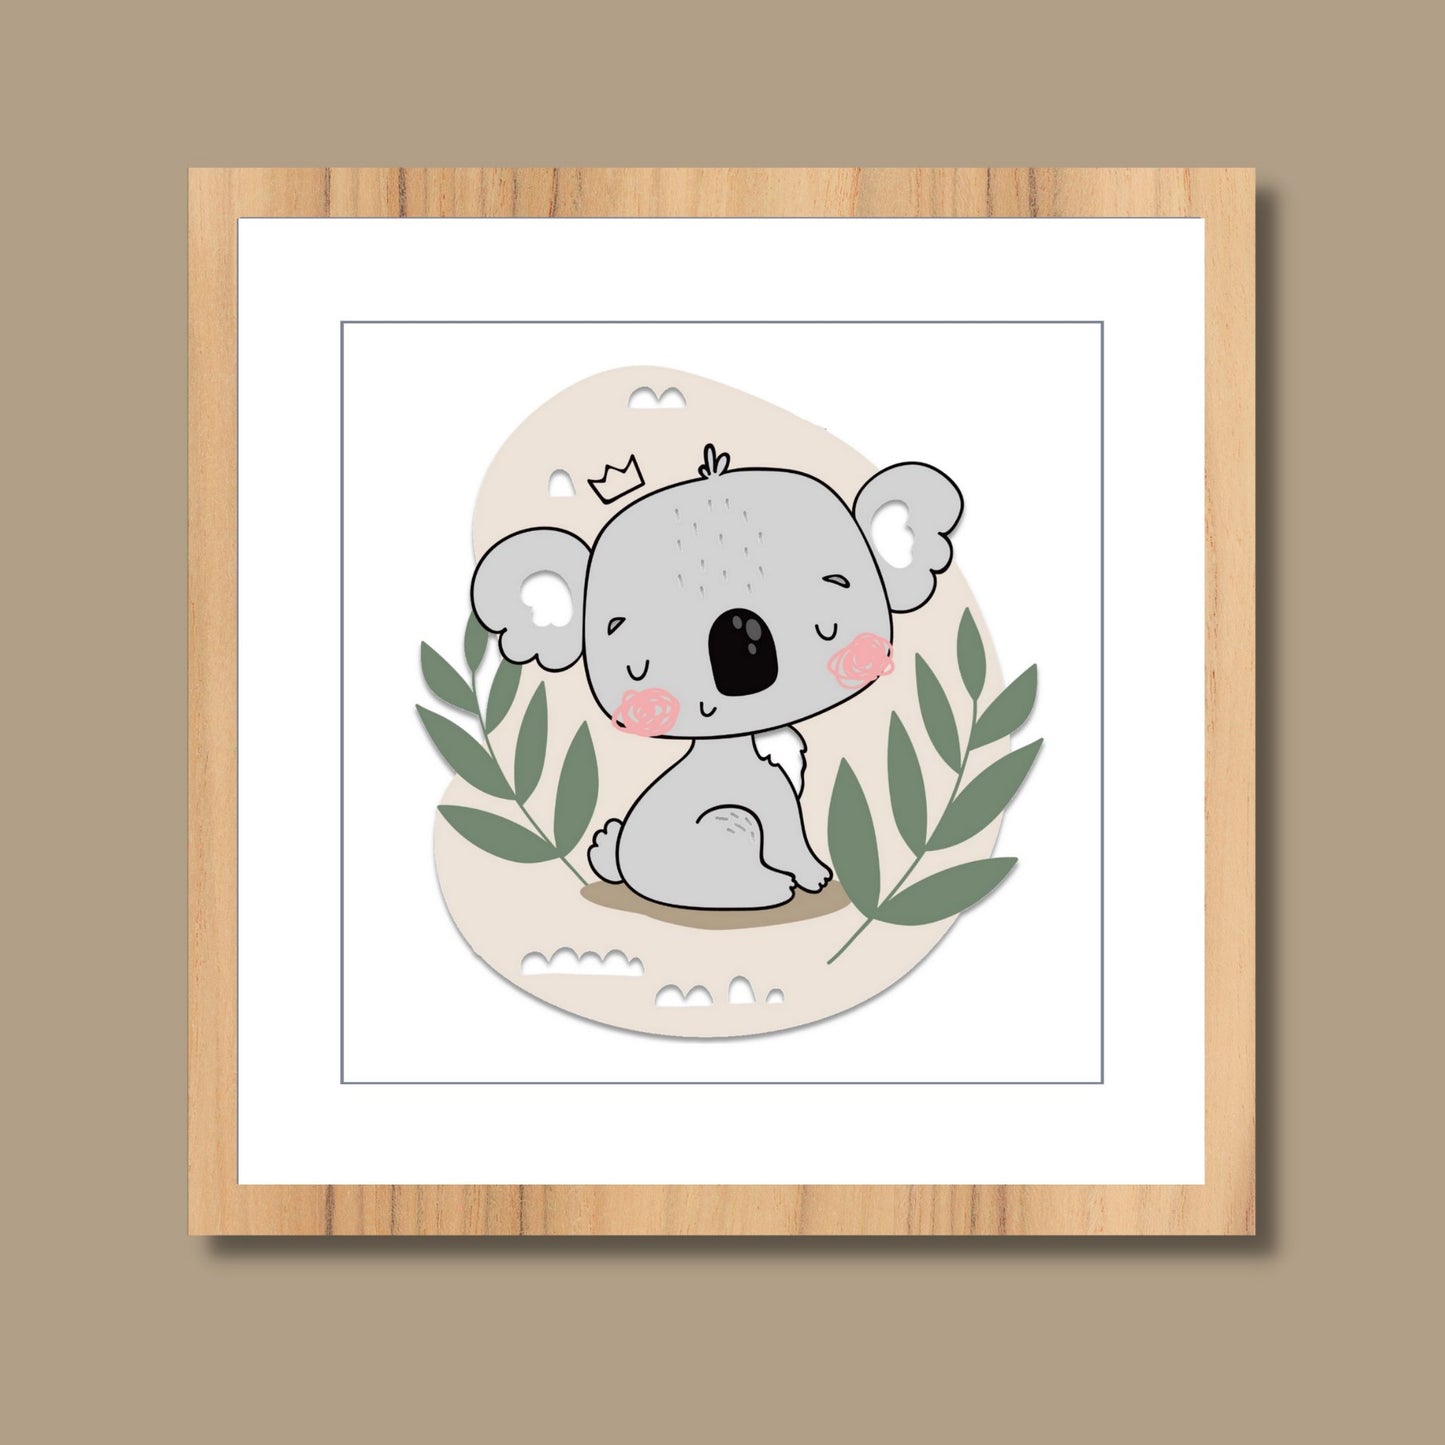 Koselig grafisk barneplakat med en søt koalabjørn som sitter i jungelen.